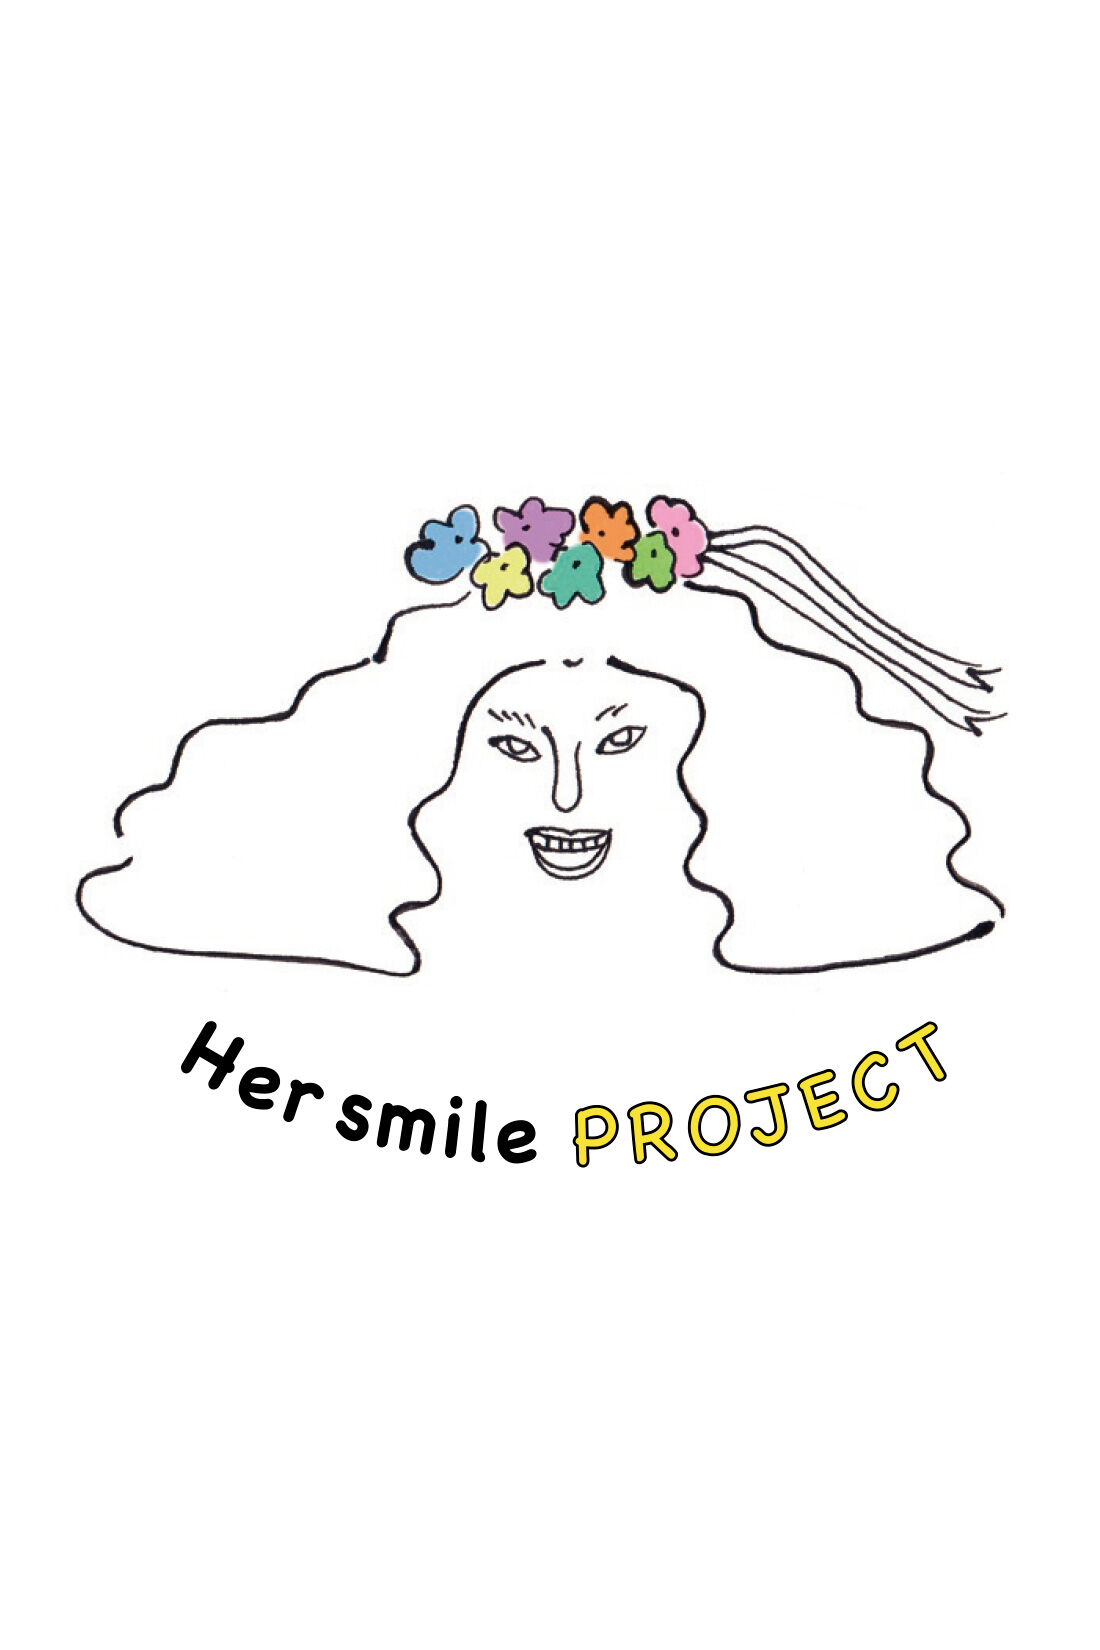 IEDIT|Her smileプロジェクト IEDIT[イディット]　オーガニックコットンのインドの女の子ネームプリントTシャツの会|女性のしあわせや笑顔は、子どもの未来や家族・社会を豊かにすることに繋がっているはず。だから、世界中の女性をしあわせに、笑顔があふれる社会にしたい。そんな思いをカタチに、フェリシモから、『Her smile基金プロジェクト』がスタートしています！